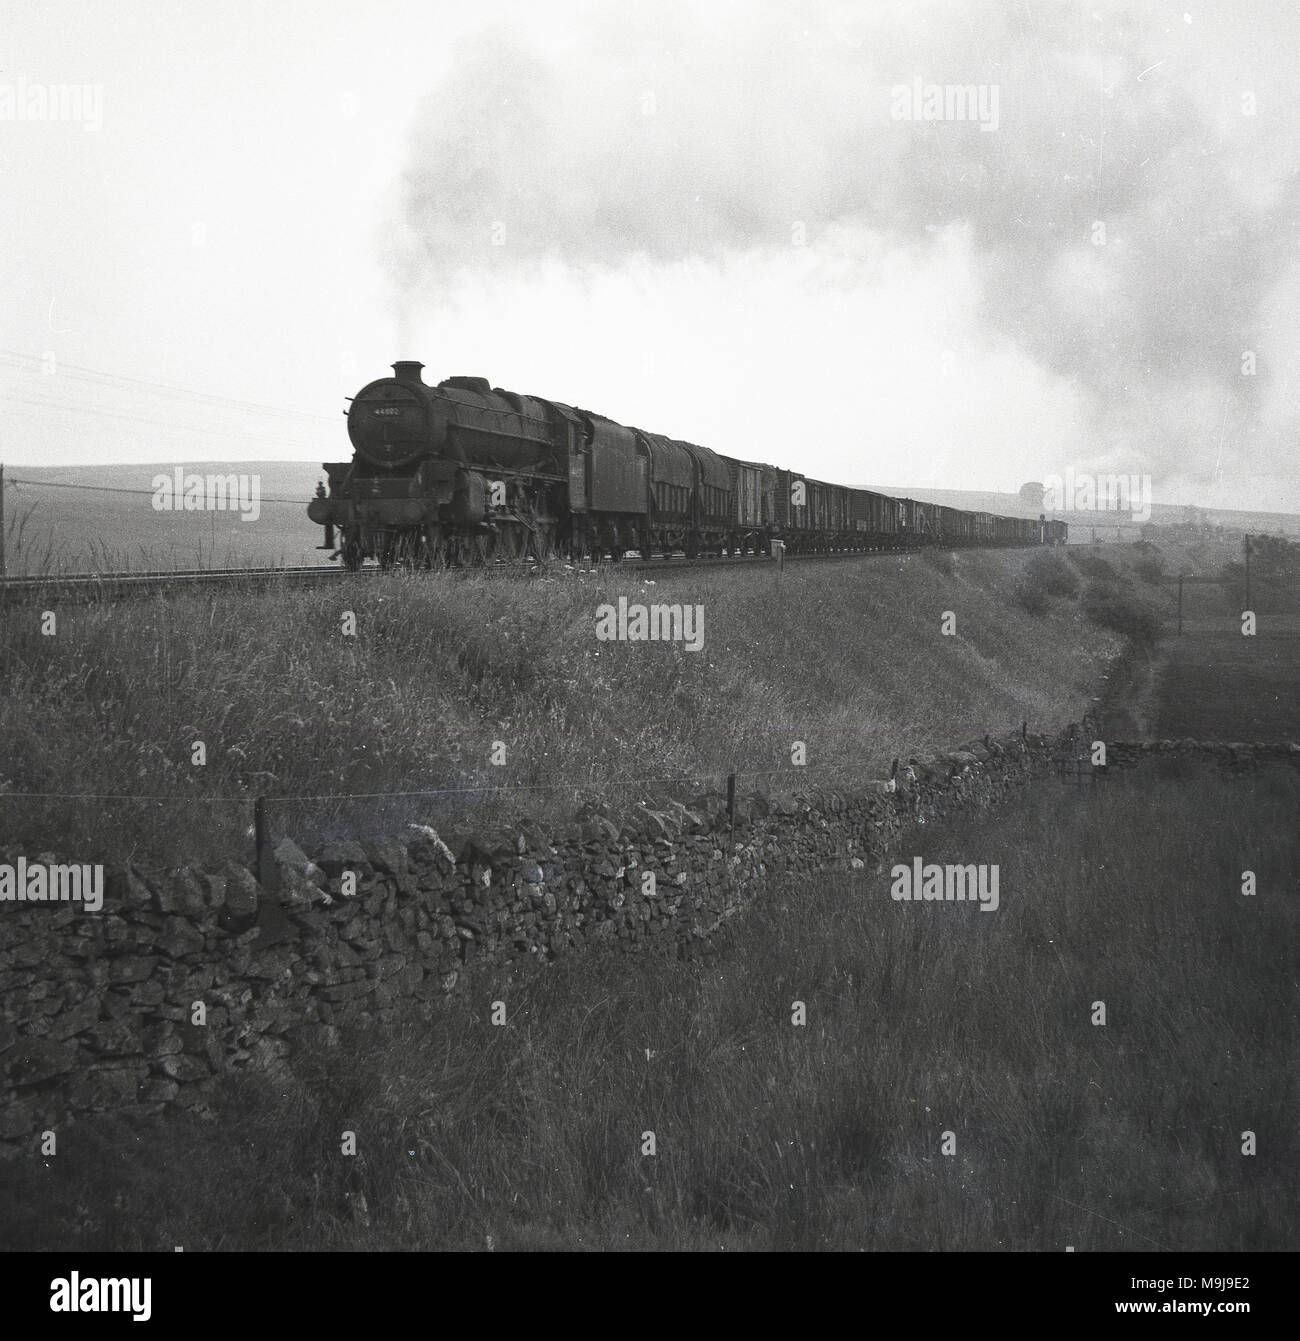 Degli anni Cinquanta, storico locomotiva a vapore con carrozze che viaggiano su una campagna rialzata in binario ferroviario, Inghilterra, Regno Unito. Foto Stock